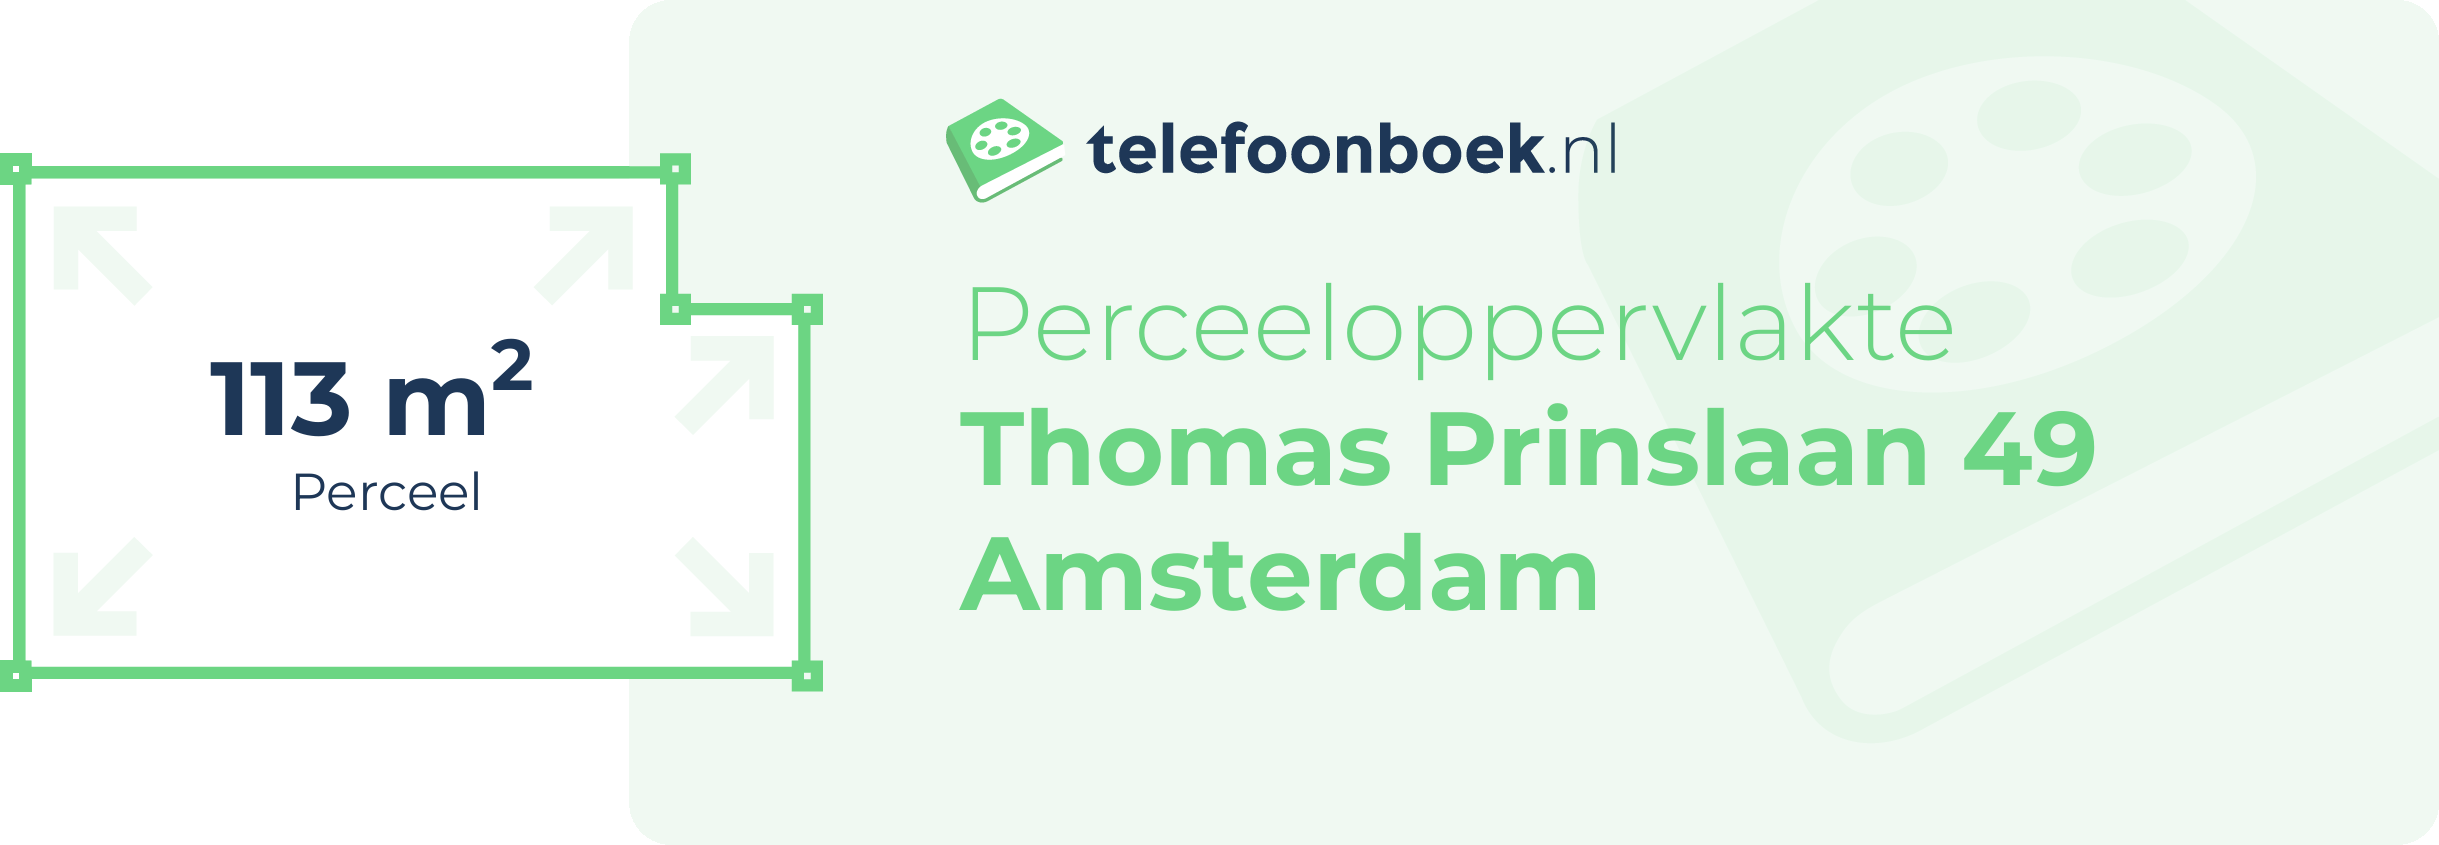 Perceeloppervlakte Thomas Prinslaan 49 Amsterdam